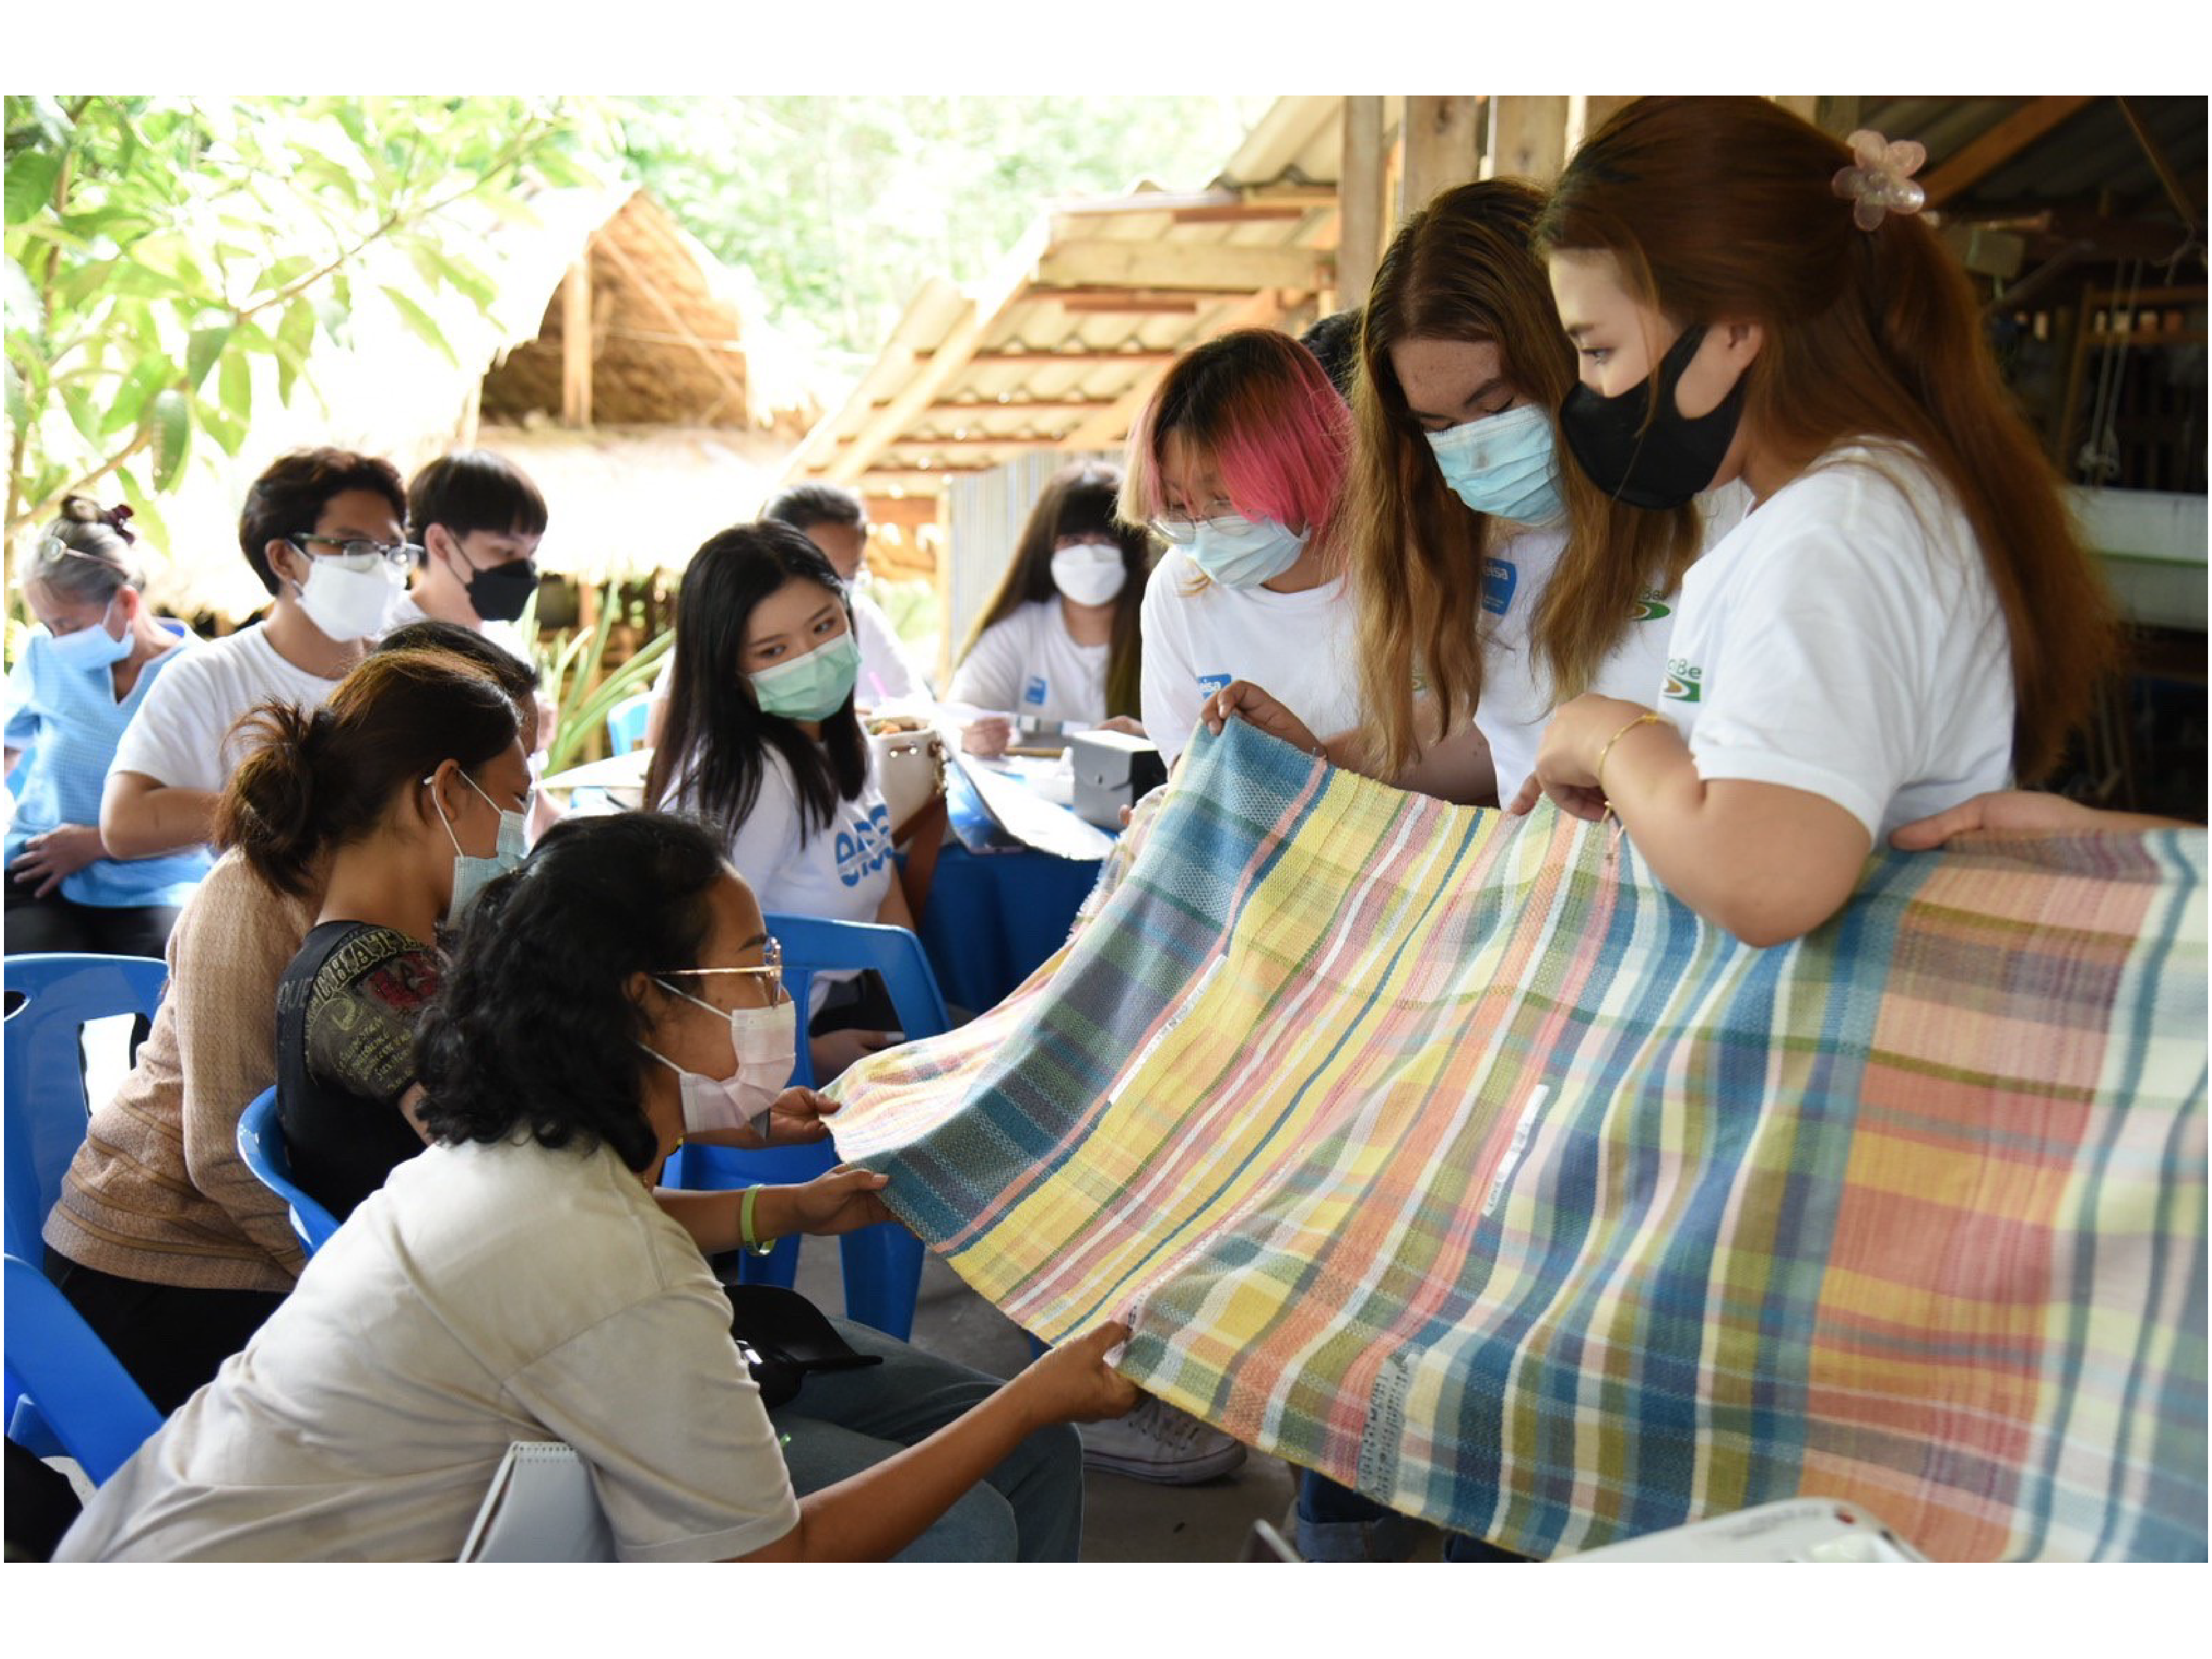 โครงการผ้าขาวม้าท้องถิ่นหัตถศิลป์ไทย ร่วมกับ eisa นำนักศึกษา ม.ธรรมศาสตร์ ลงพื้นที่กลุ่มอาชีพทอผ้าบ้านล่องมุด จ.สงขลา